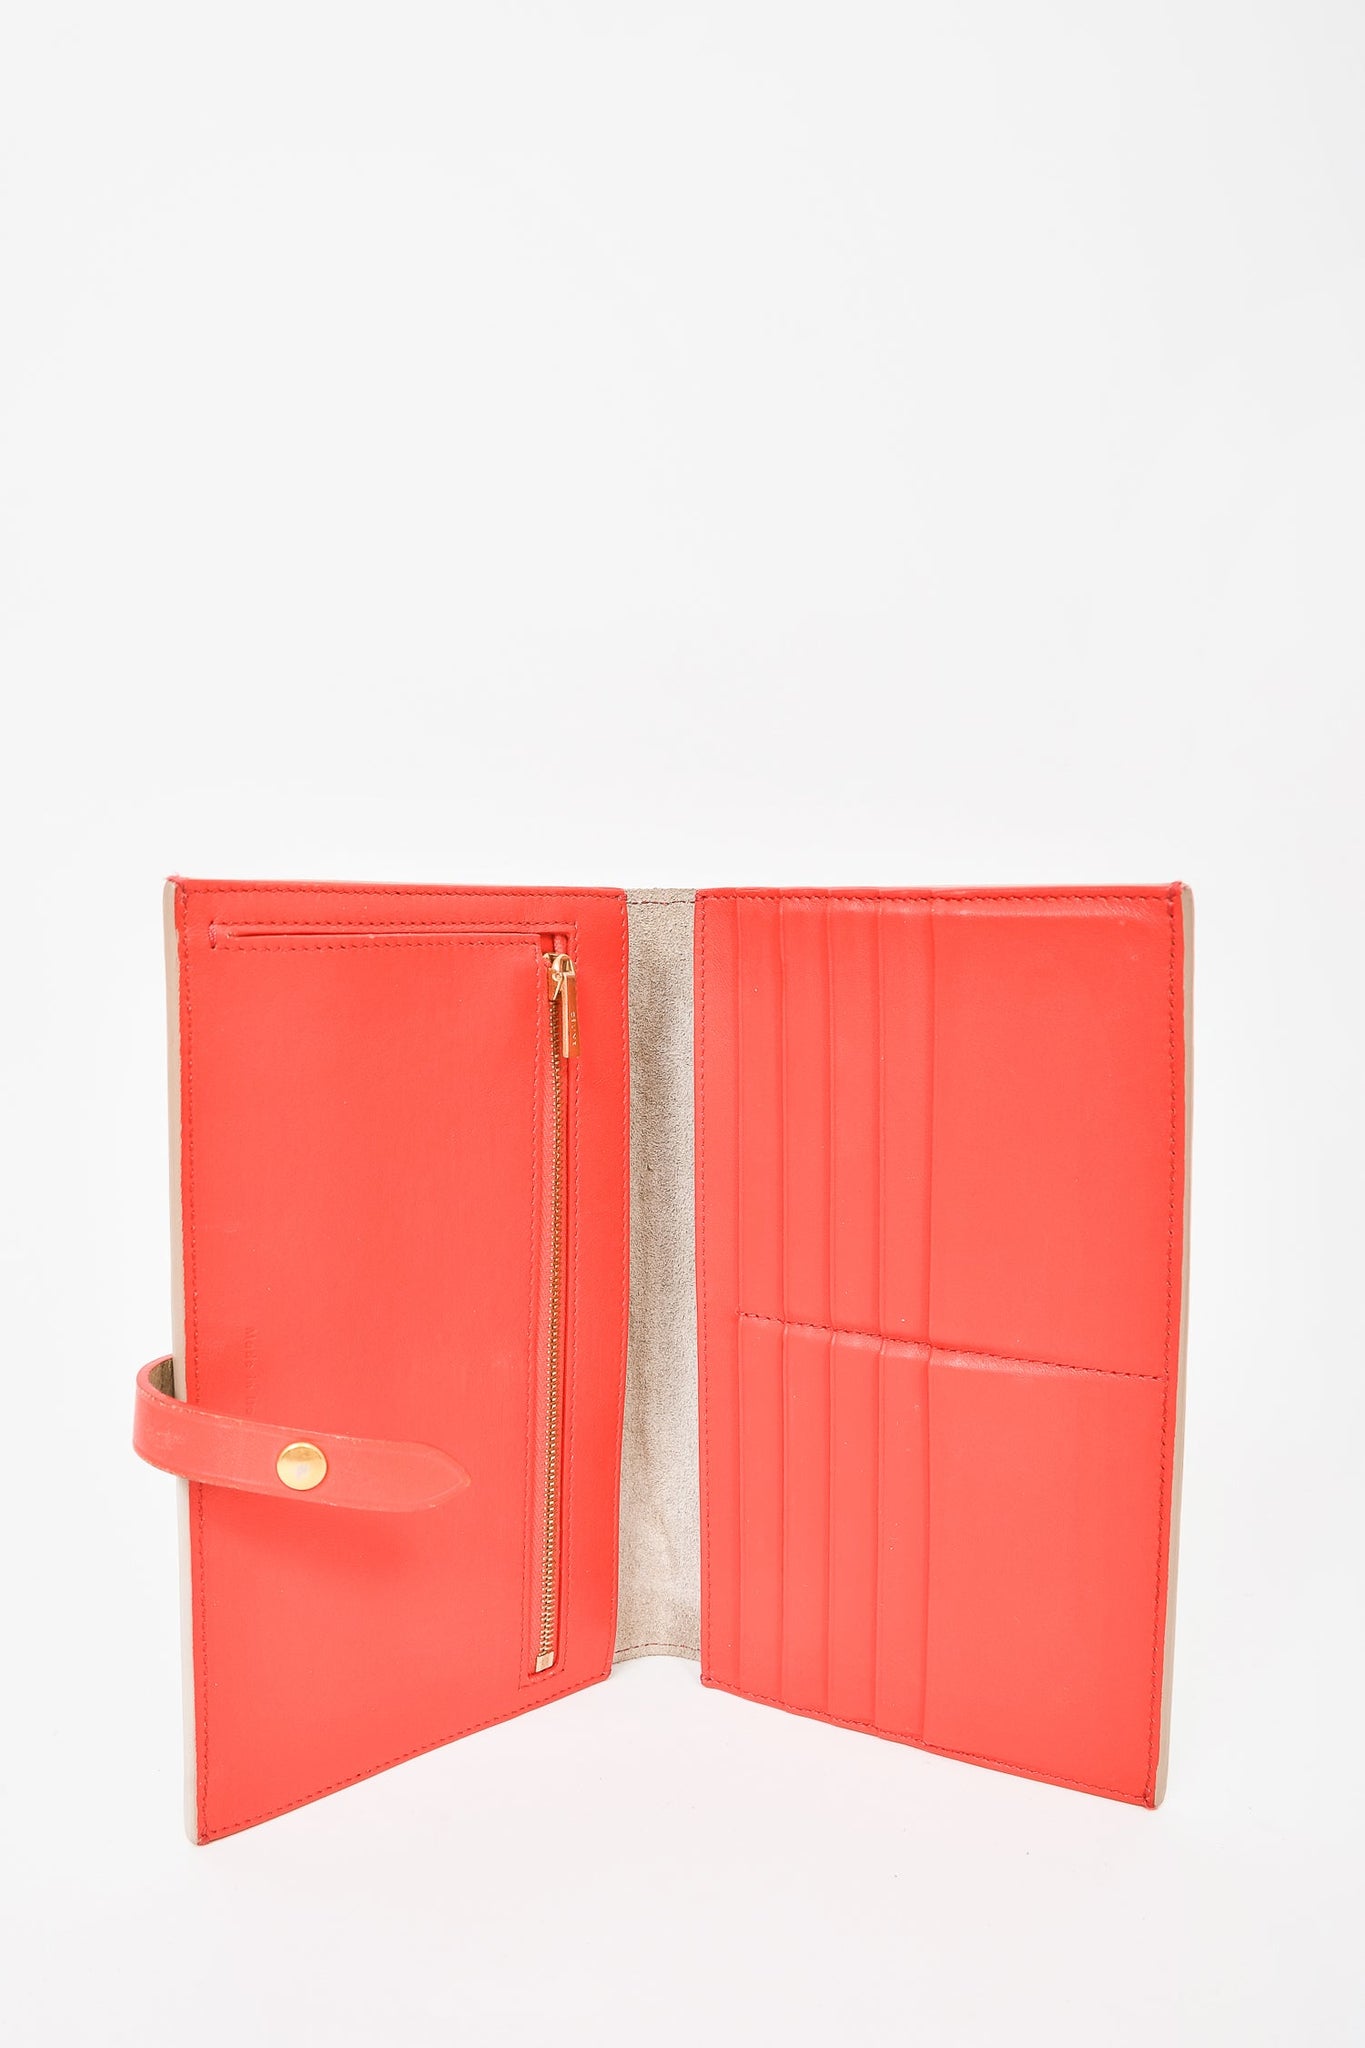 Celine Beige/Coral Leather Large Strap Wallet